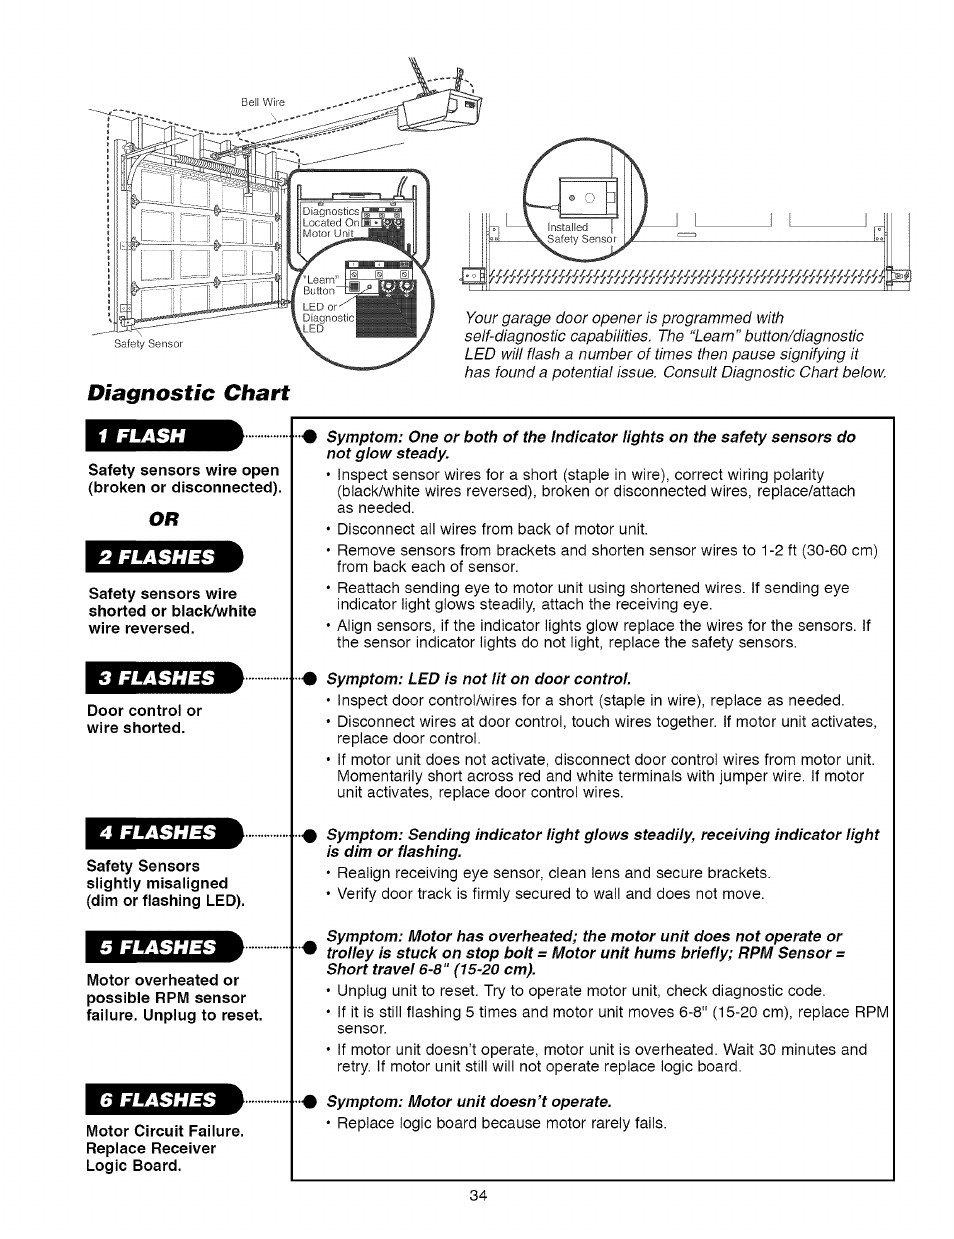 Craftsman Garage Door Opener Manual
 Safety sensors wire open broken or disconnected Door